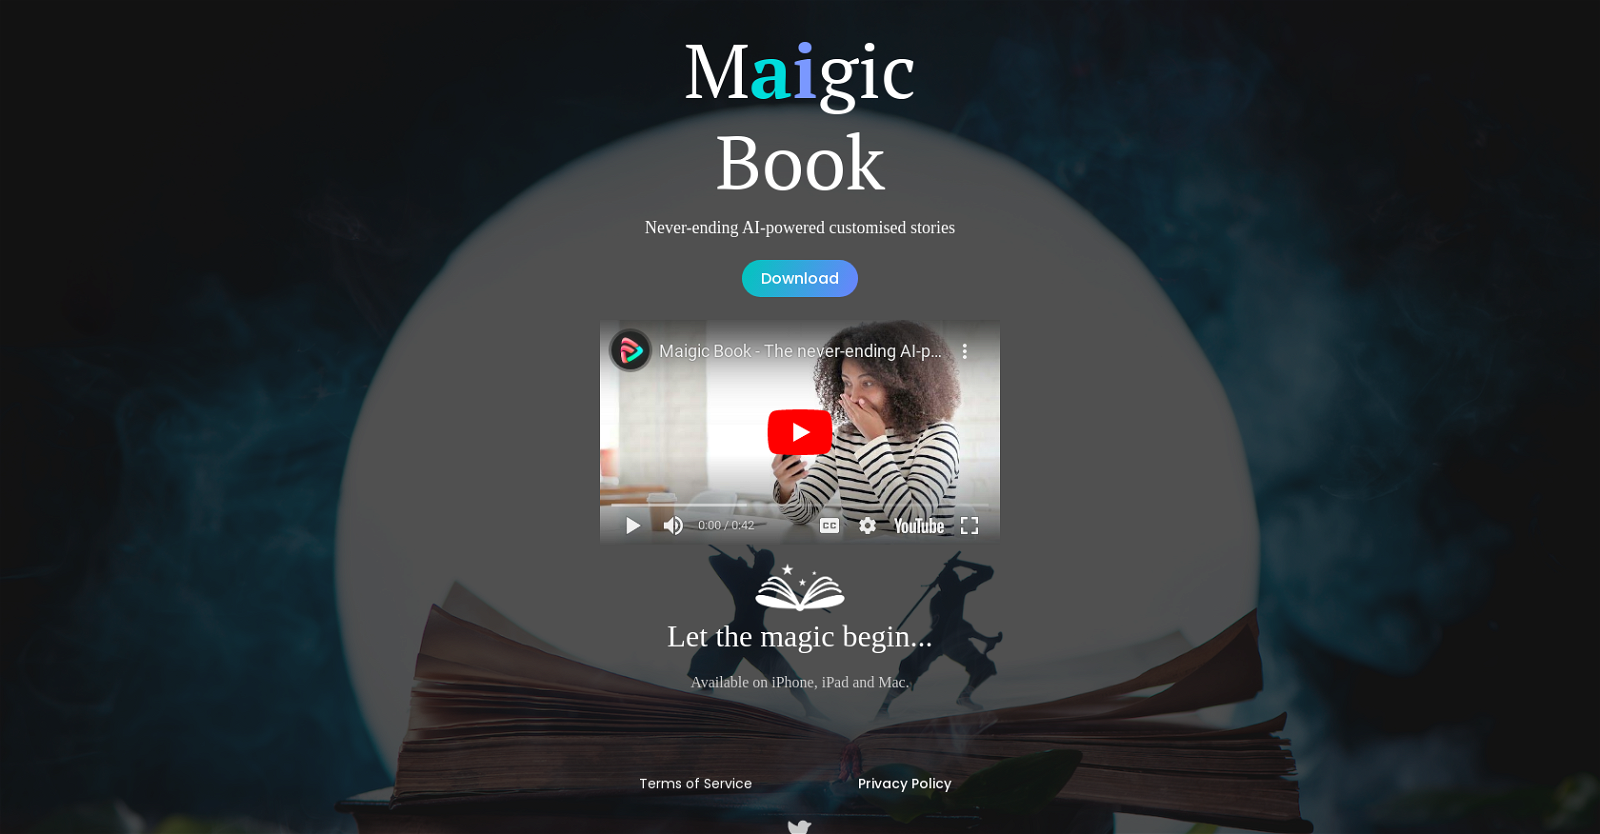 Maigic Book website